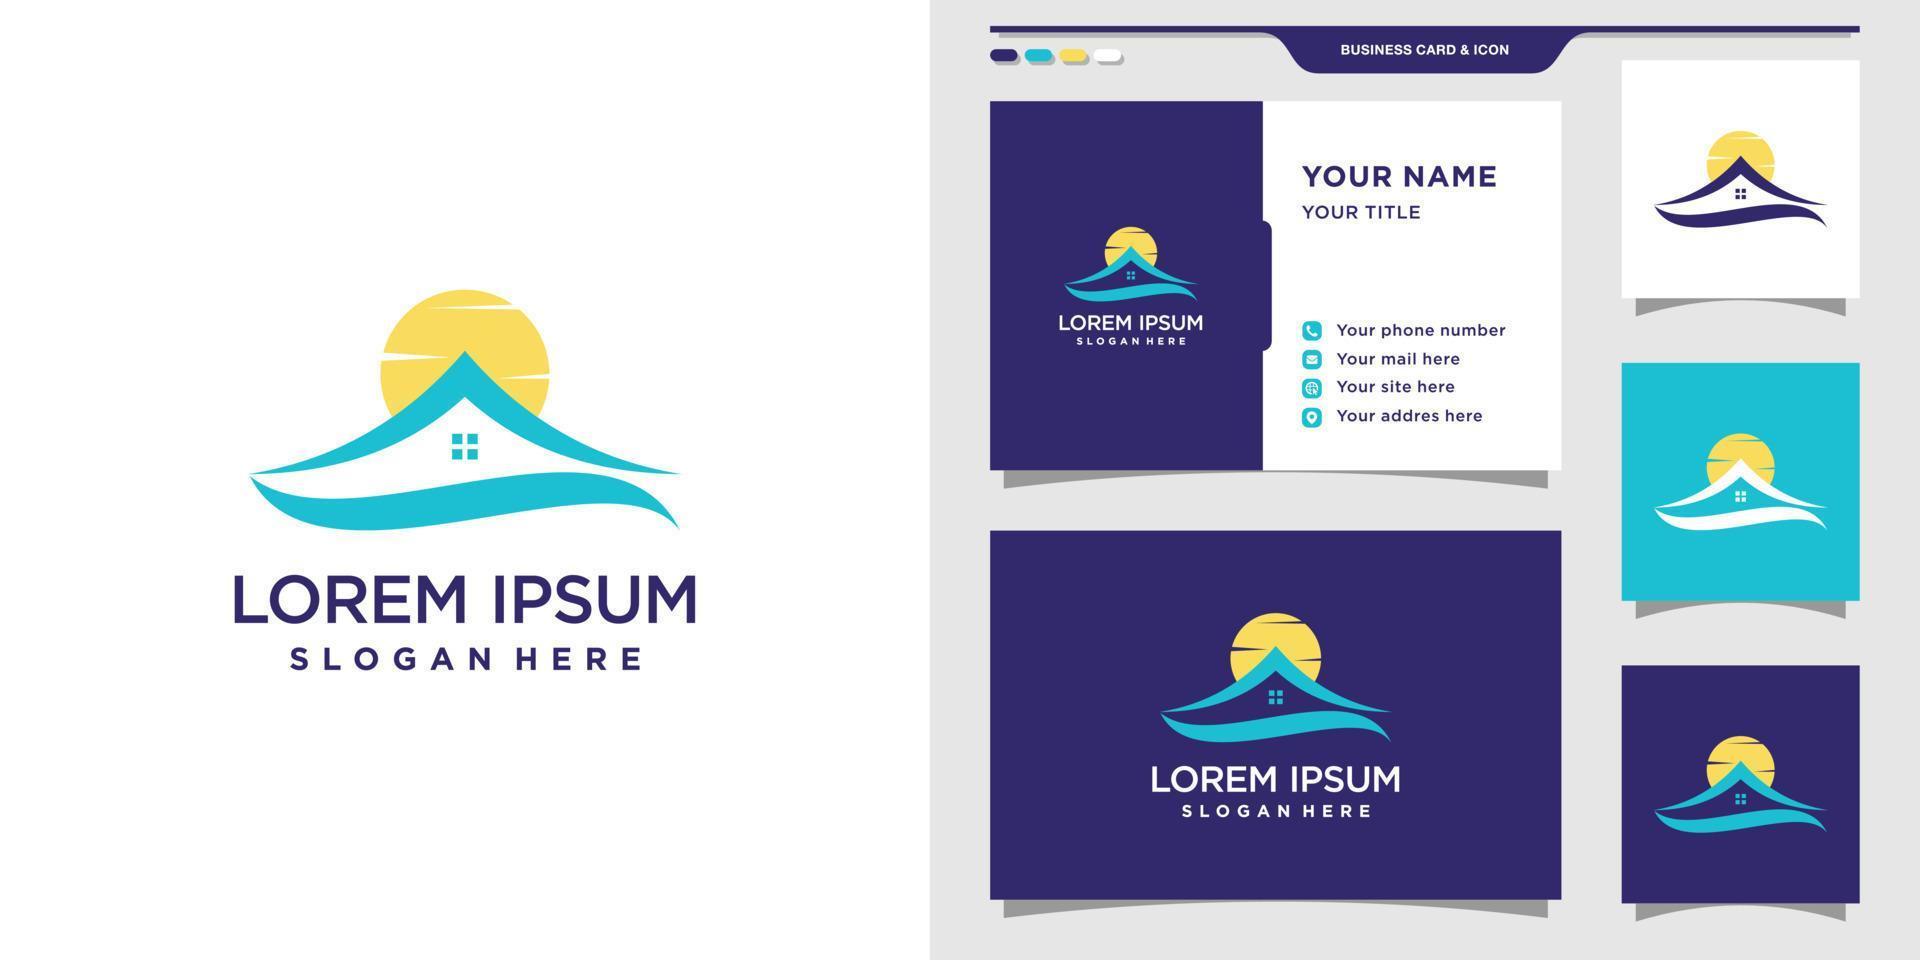 modelo de design de logotipo de lago em casa com conceito de sol e cartão de visita. inspiração de design de logotipo, ilustração. vetor premium